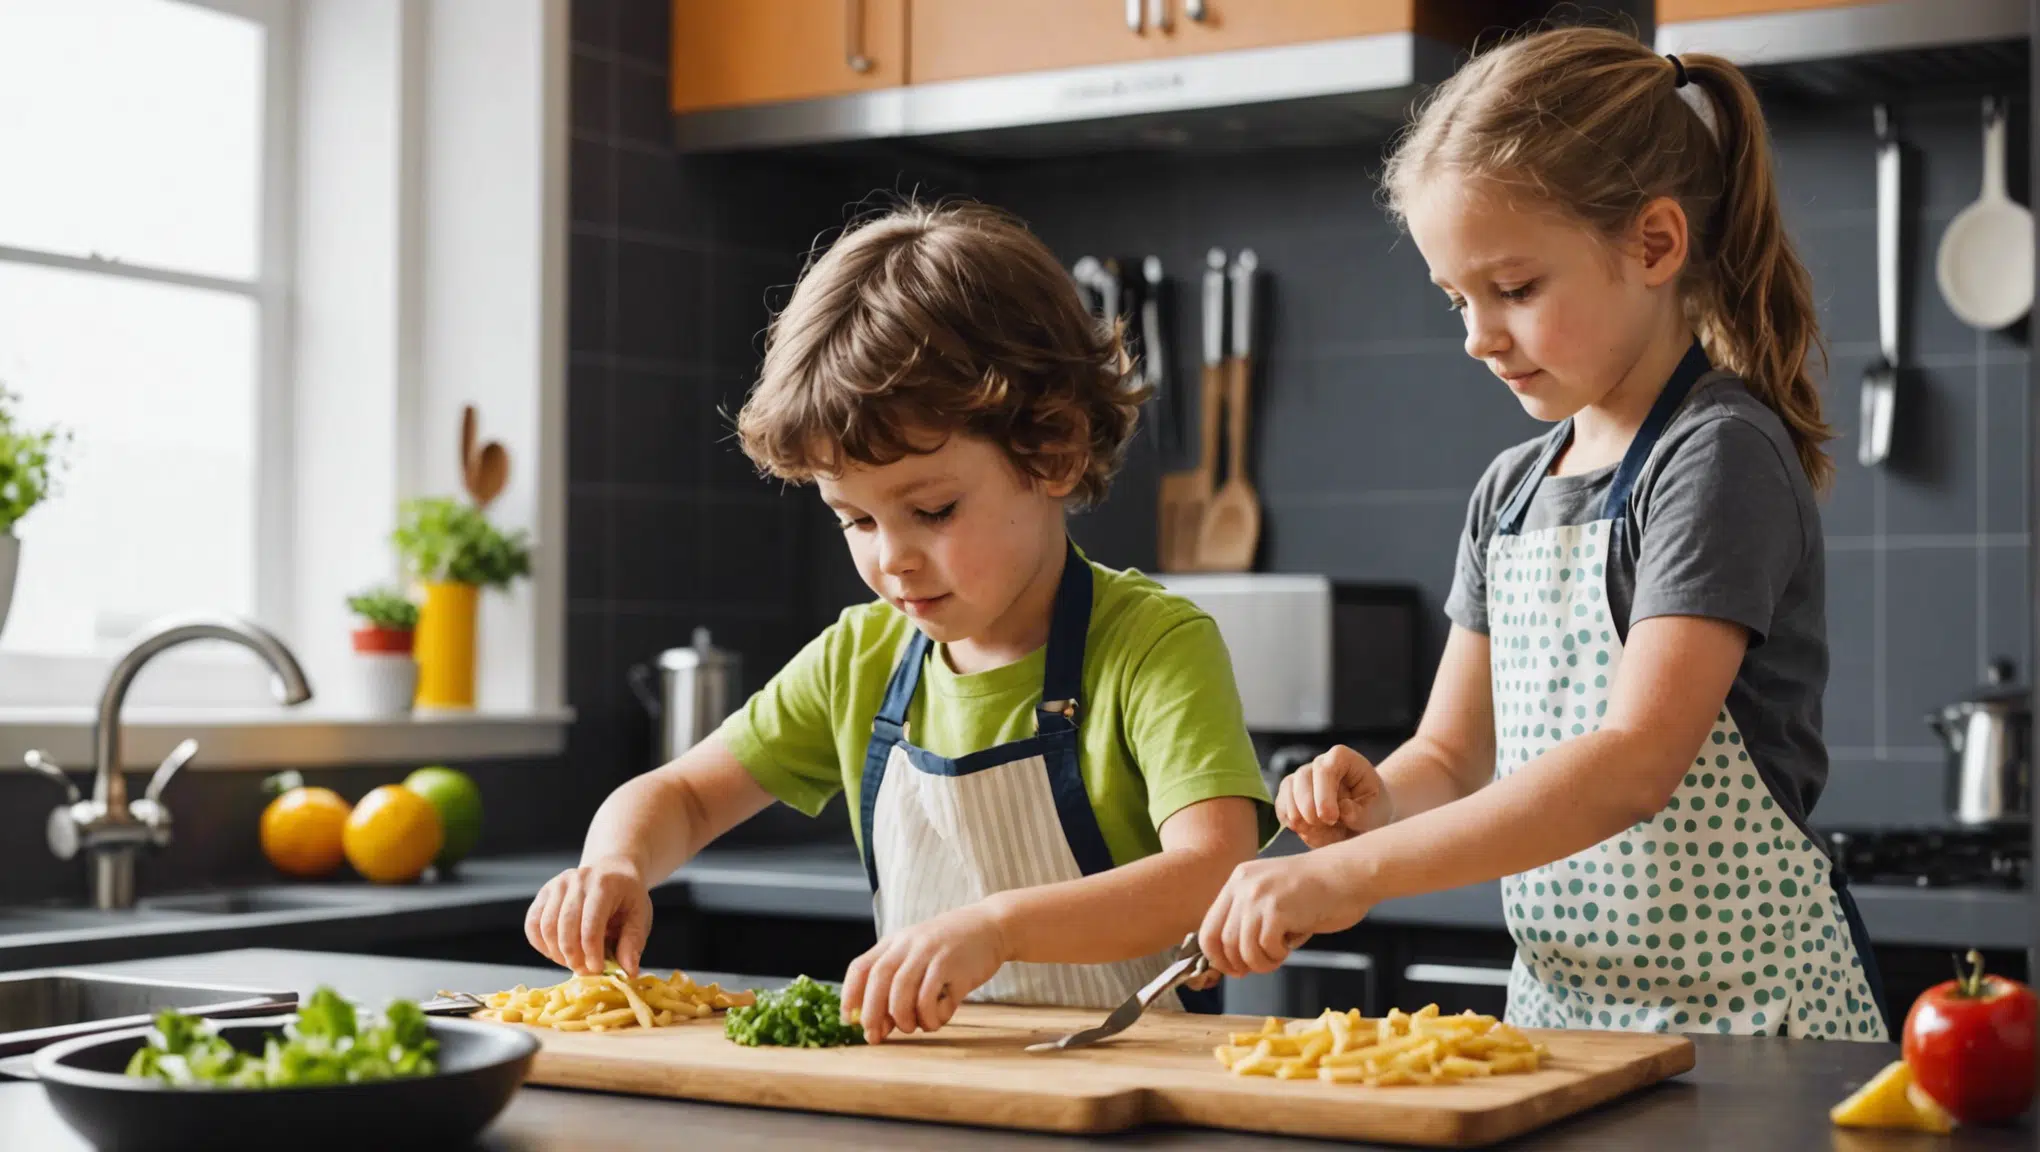 découvrez des astuces pour susciter la passion des enfants pour la cuisine et les encourager à développer leur créativité et leur goût pour la cuisine, grâce à des activités ludiques et éducatives.